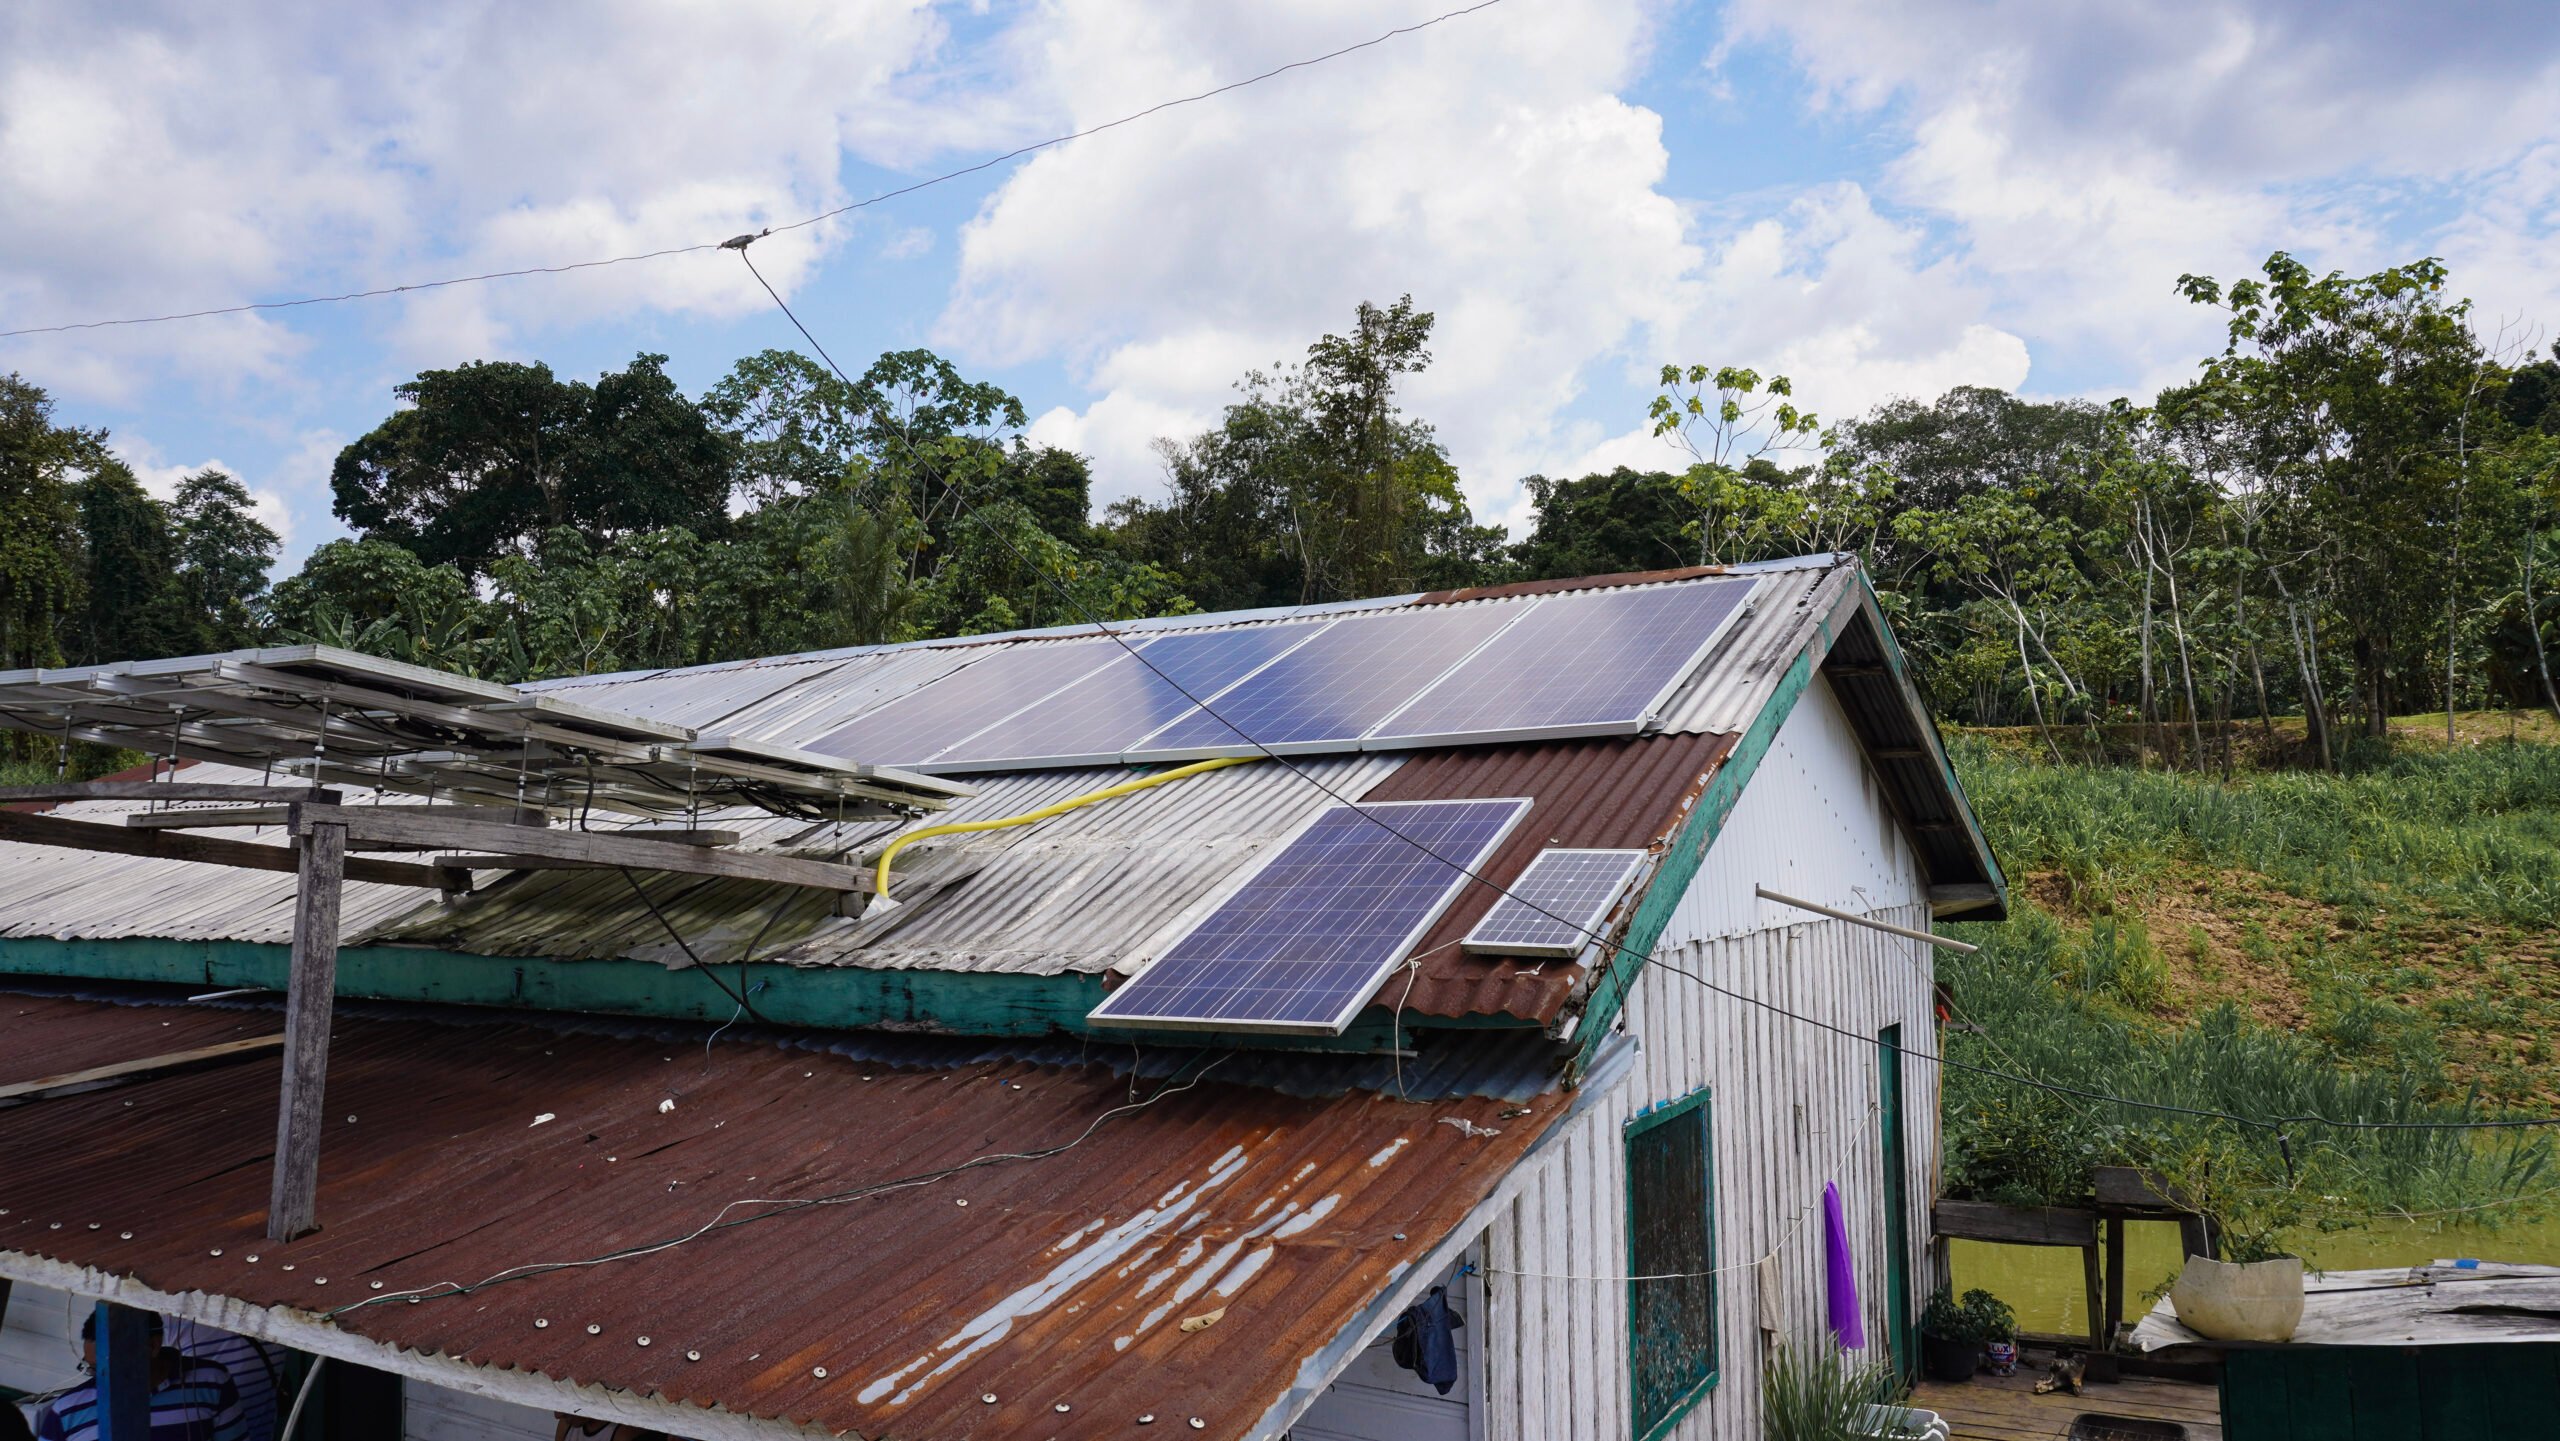 Transição energética justa e democratização do acesso à energia no Brasil. Na imagem, projeto ‘Sempre Luz’, parceria entre a Fundação Amazônia Sustentável (FAS) e a empresa Unicoba da Amazônia, para levar energia solar a comunidades ribeirinhas e indígenas do Amazonas (Foto: FAS/Divulgação) 